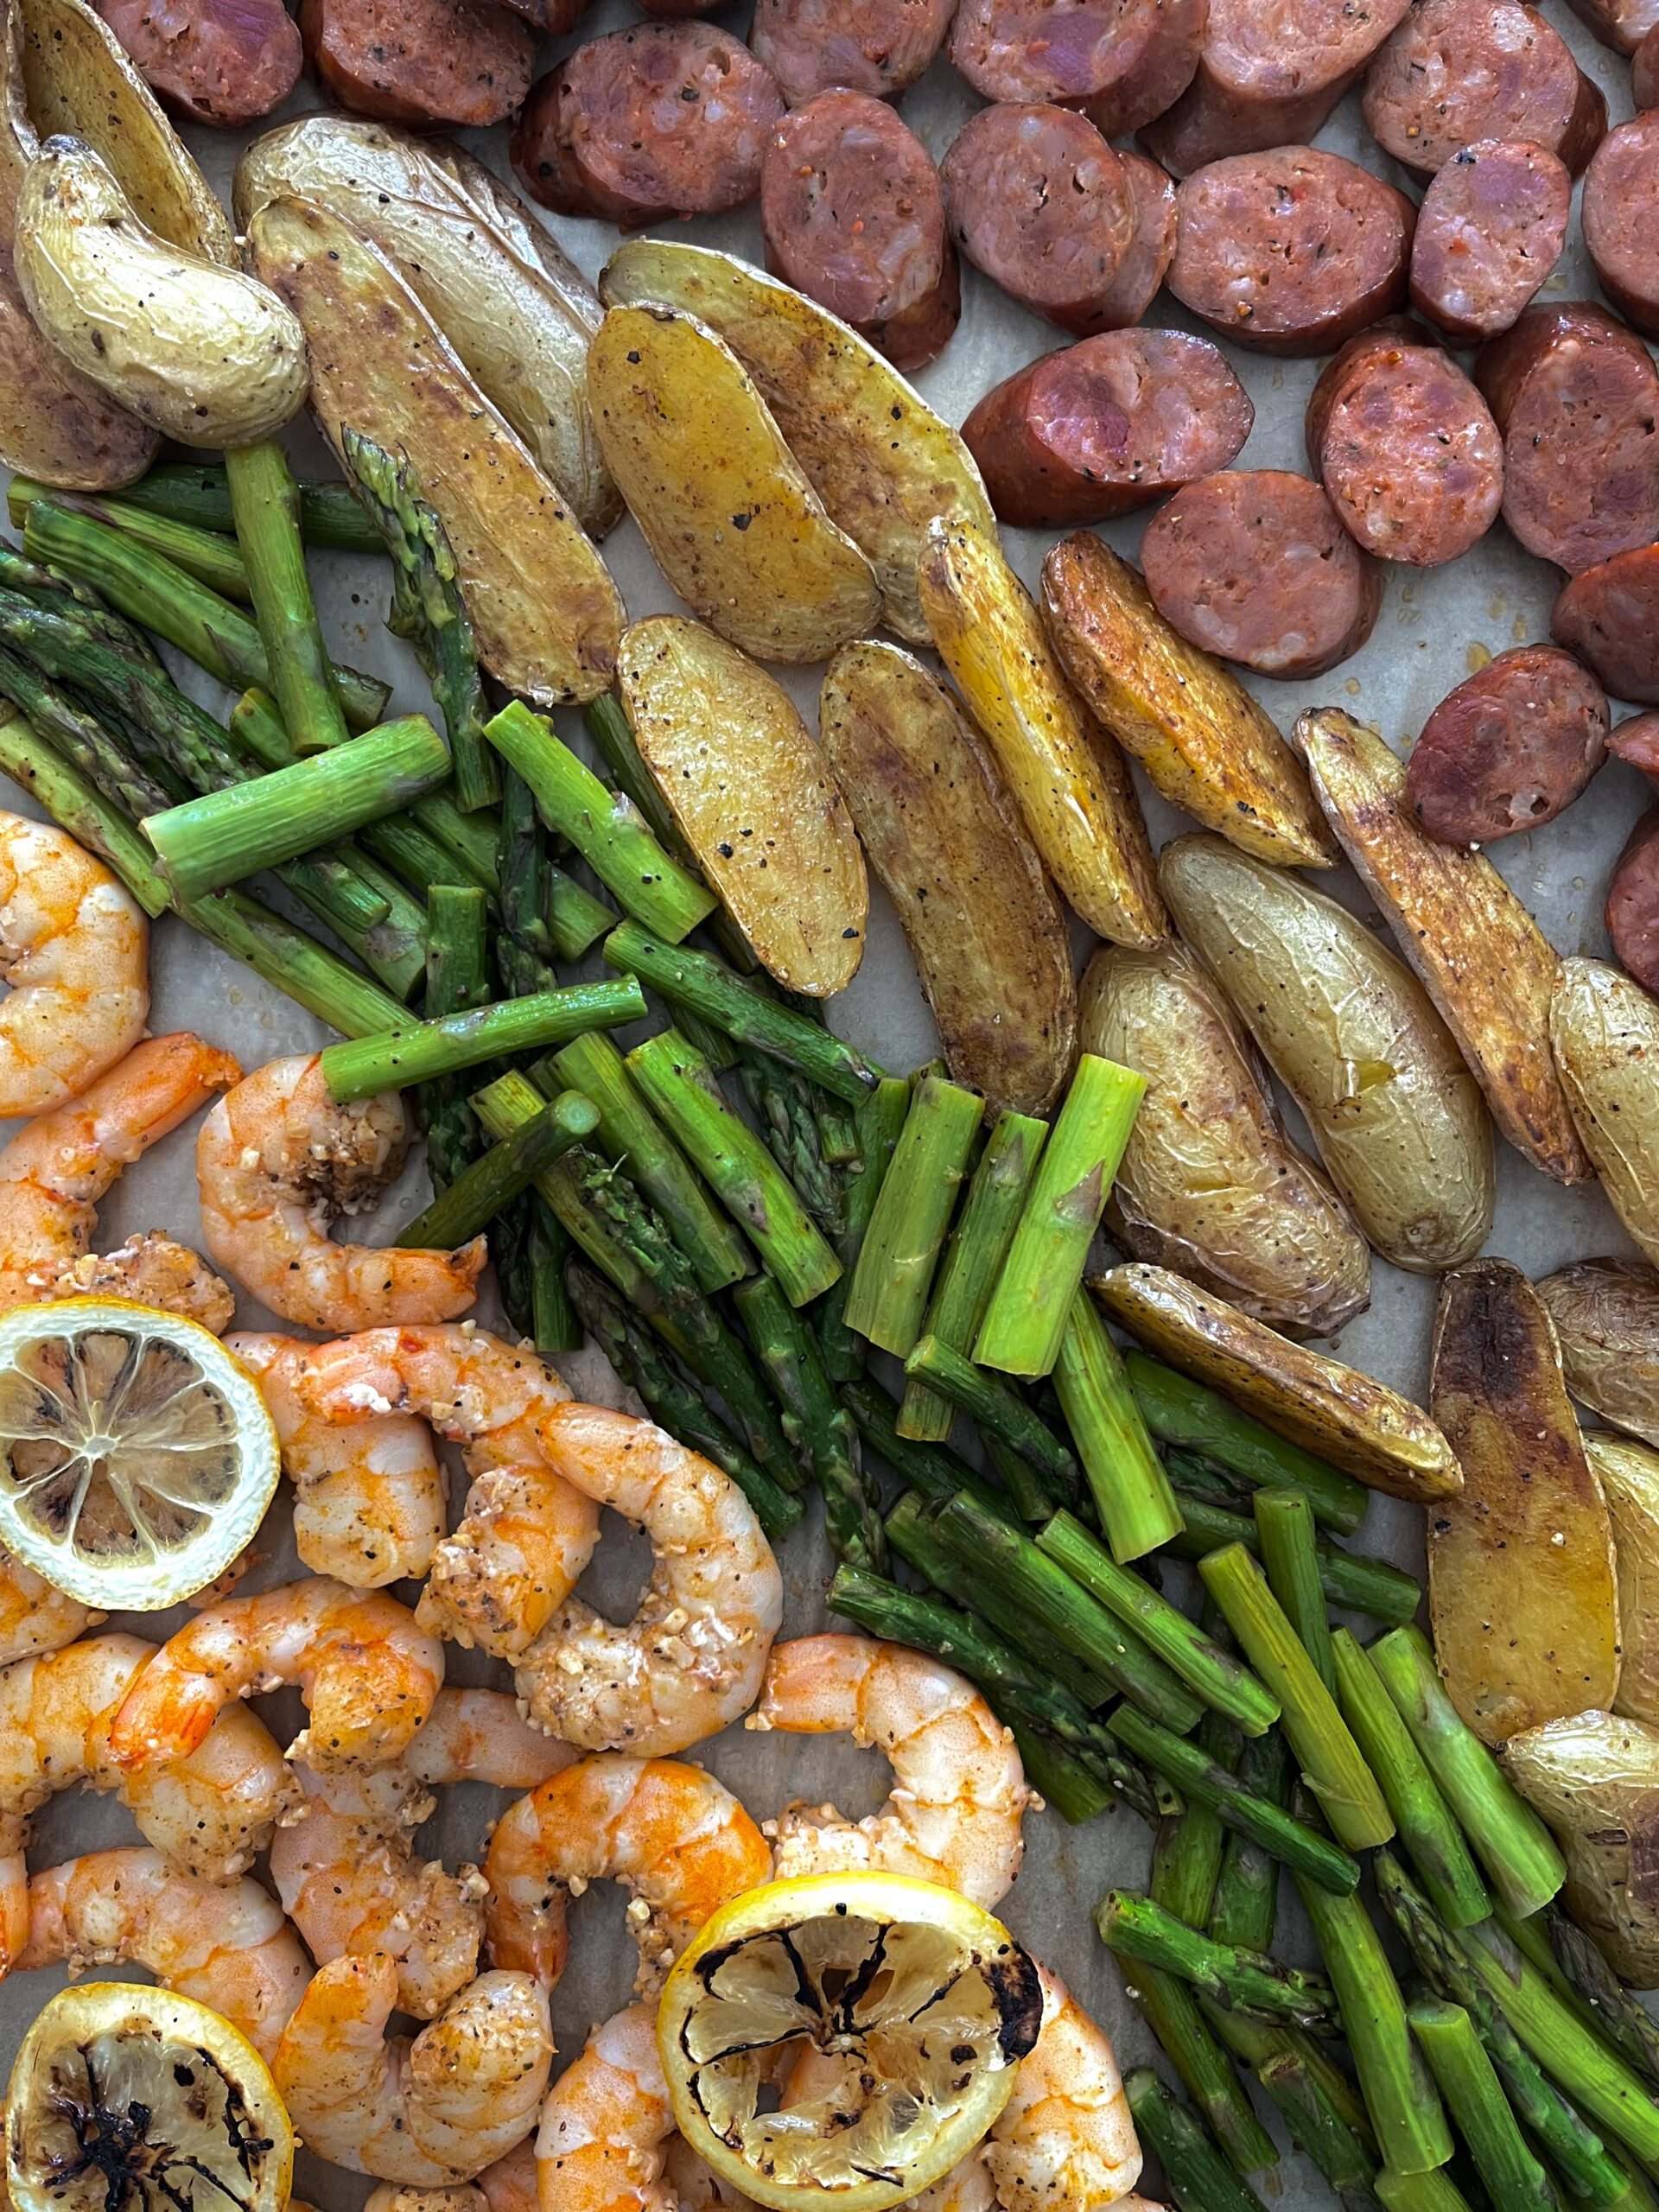 https://sarahkoszyk.com/wp-content/uploads/2022/12/Sheet-Pan-Cajun-Shrimp-Sausage-Asparagus-Potato-Layout-on-Pan-scaled.jpg